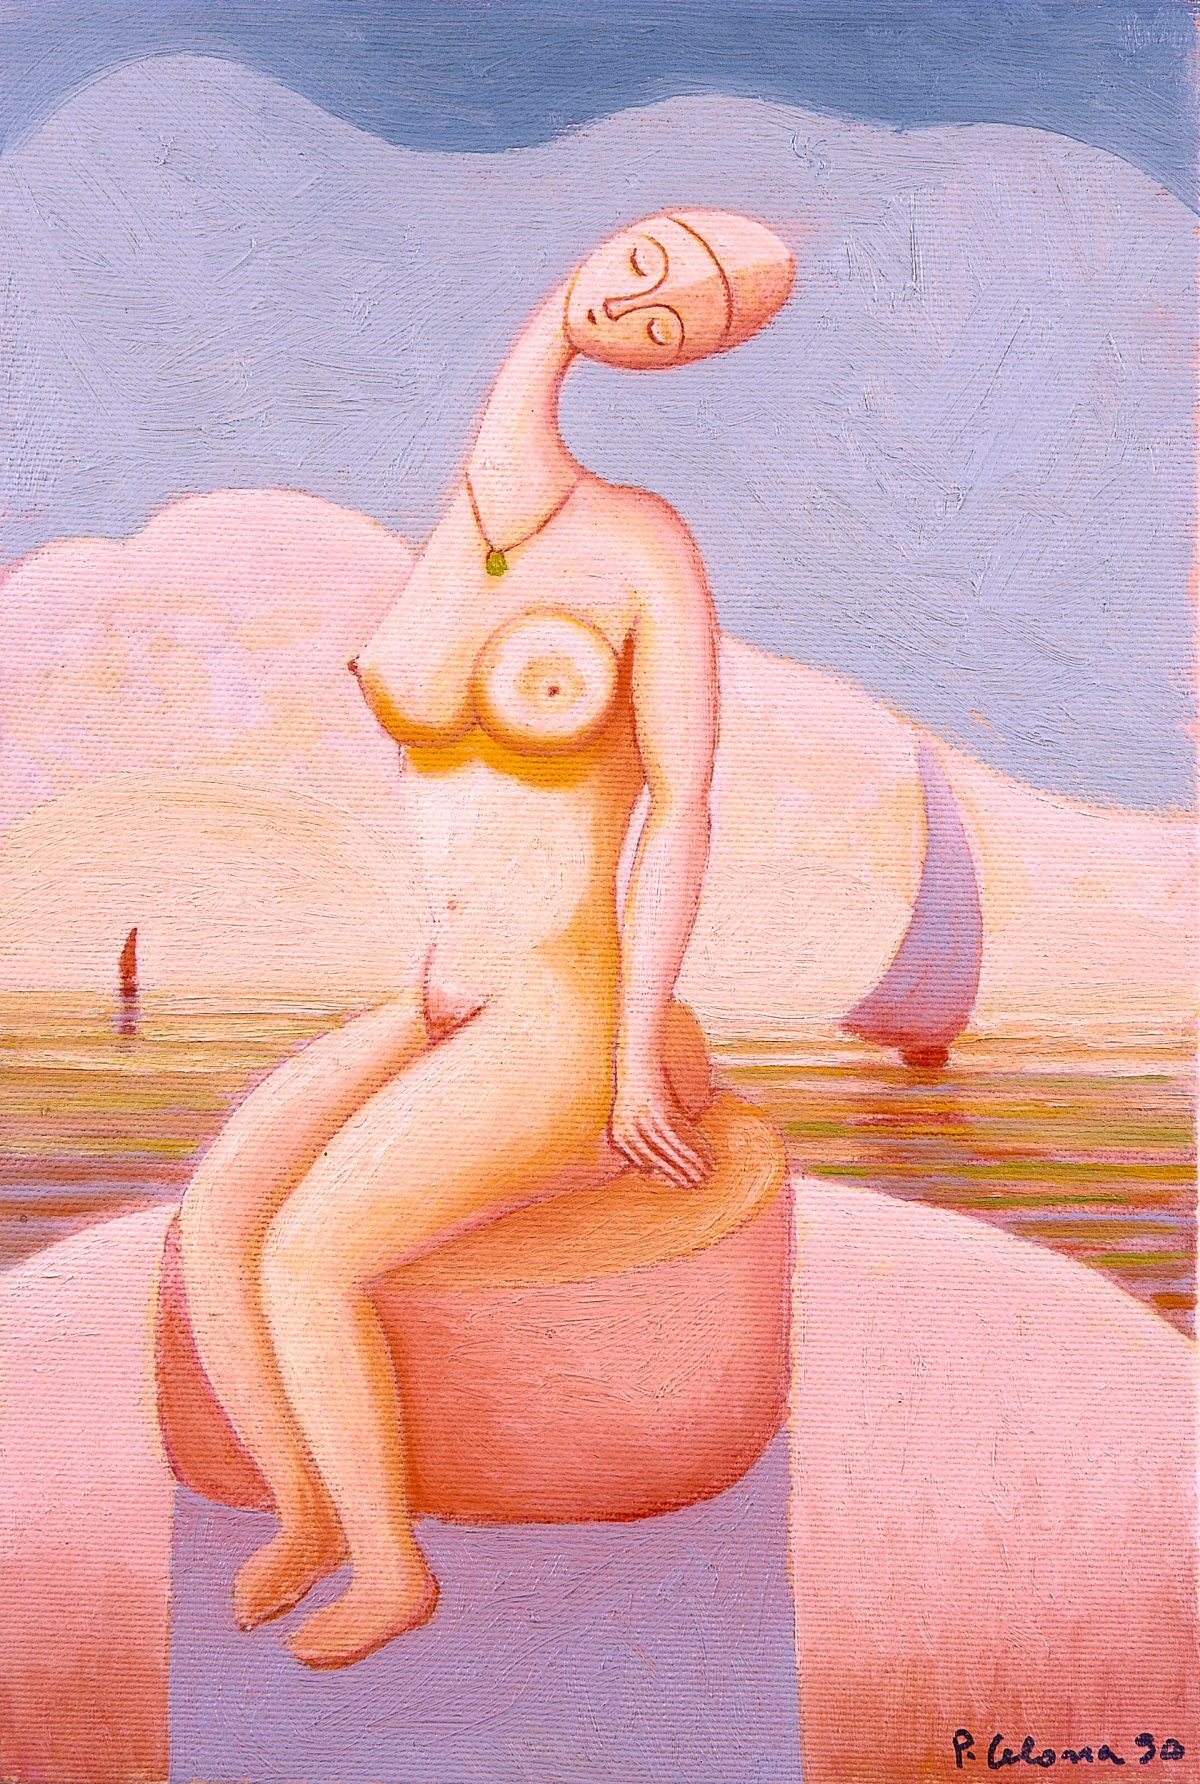 Bagnante, 1990
Olio su tela
30 x 20 cm,
FV044